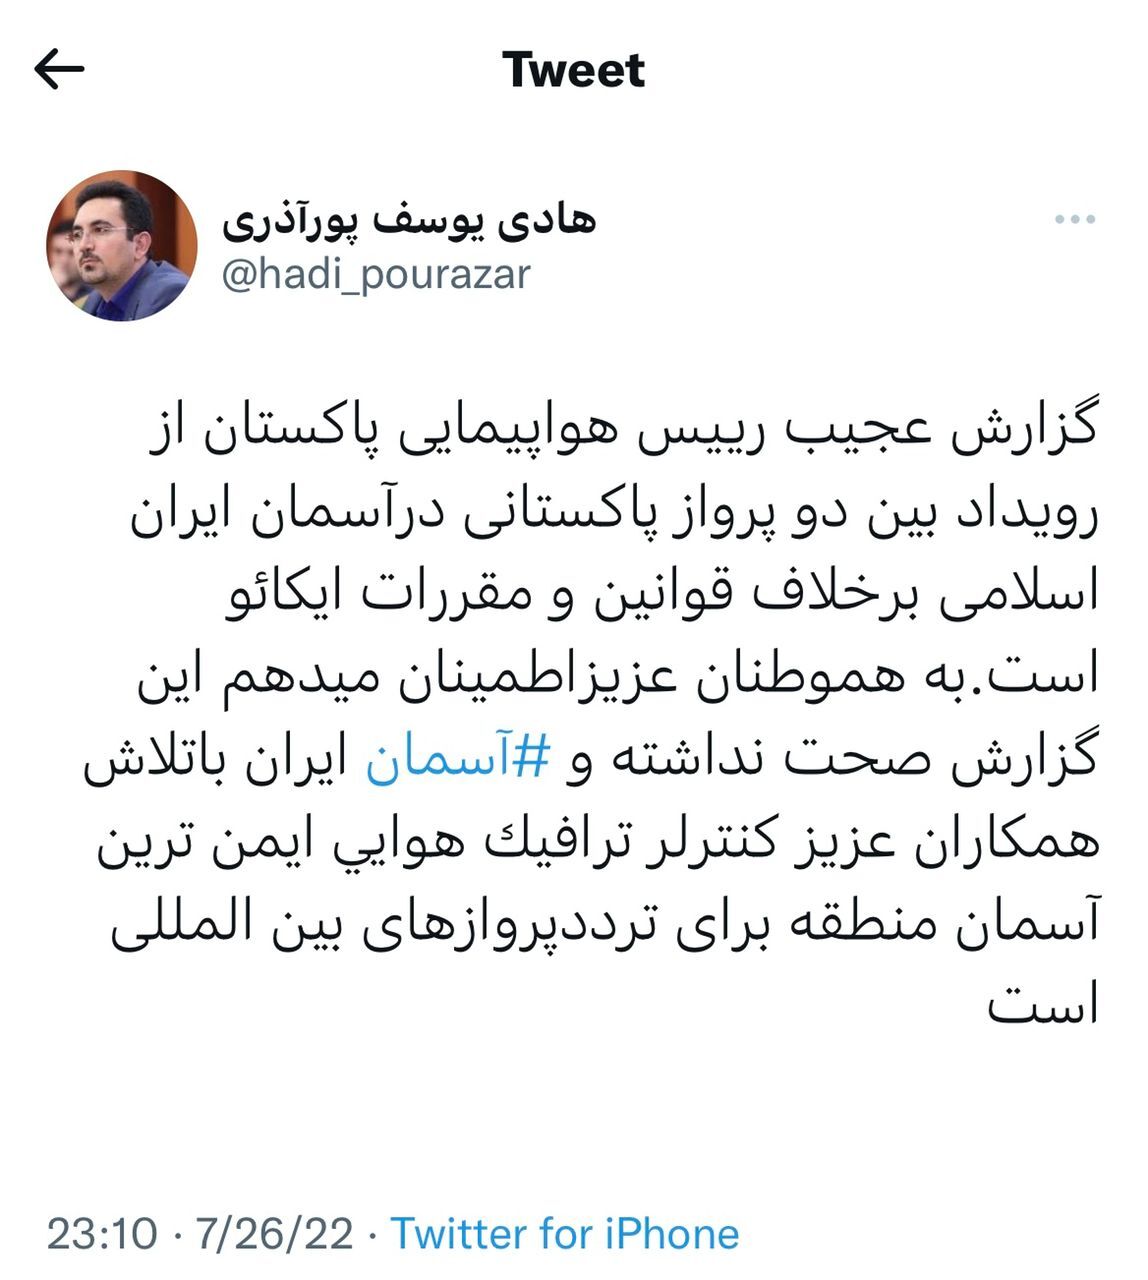 ادعای اشتباه کنترل هوایی و نزدیک شدن غیر متعارف دو هواپیمای پاکستانی در آسمان ایران + تکذیبیه طرف ایرانی